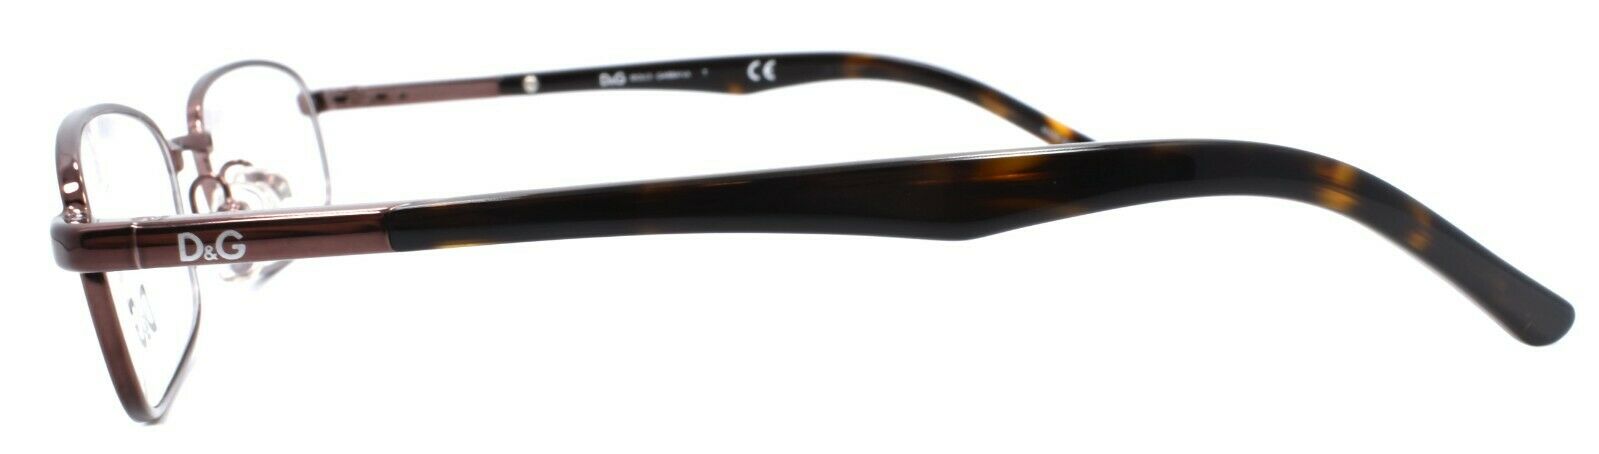 3-Dolce & Gabbana D&G 5062 152 Women's Eyeglasses 50-17-135 Brown-Does not apply-IKSpecs